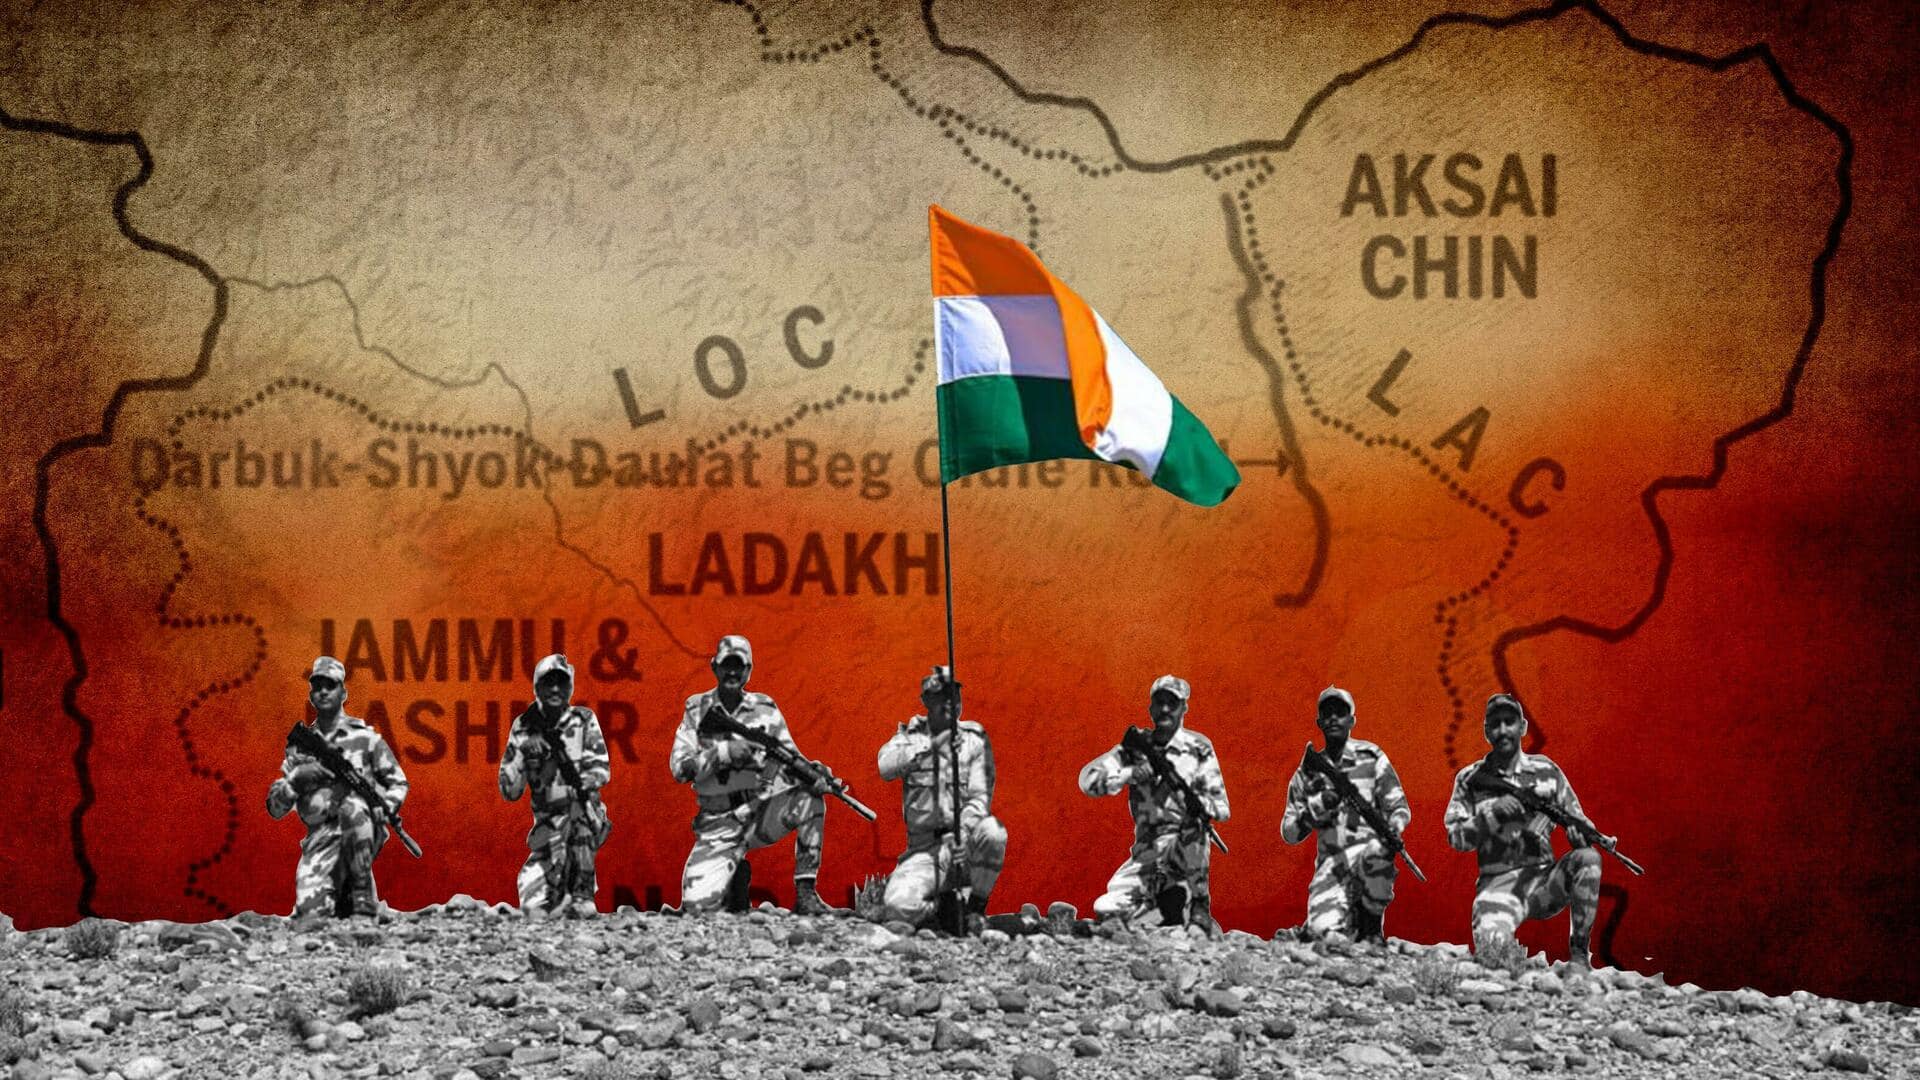 भारत-चीन सीमा पर की जाएगी 9,400 सैनिकों की तैनाती, केंद्र सरकार ने प्रस्ताव को दी मंजूरी